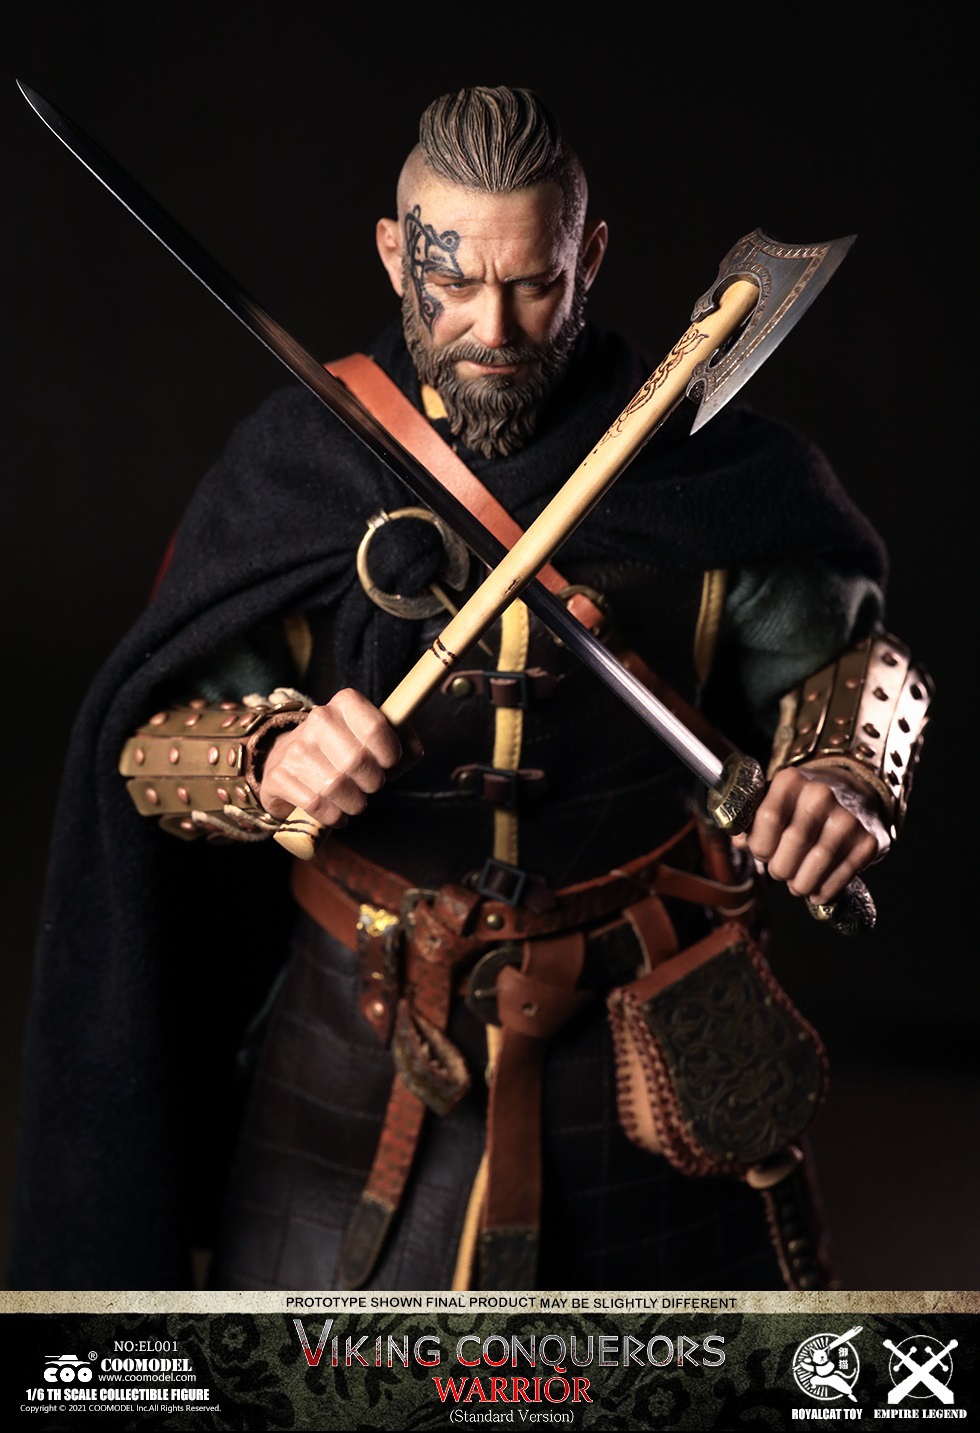 NEW PRODUCT: COOMODEL - Legend of the Empire-Viking Conqueror-Warrior, Berserker, Lord#EL001/EL002/EL003 0454